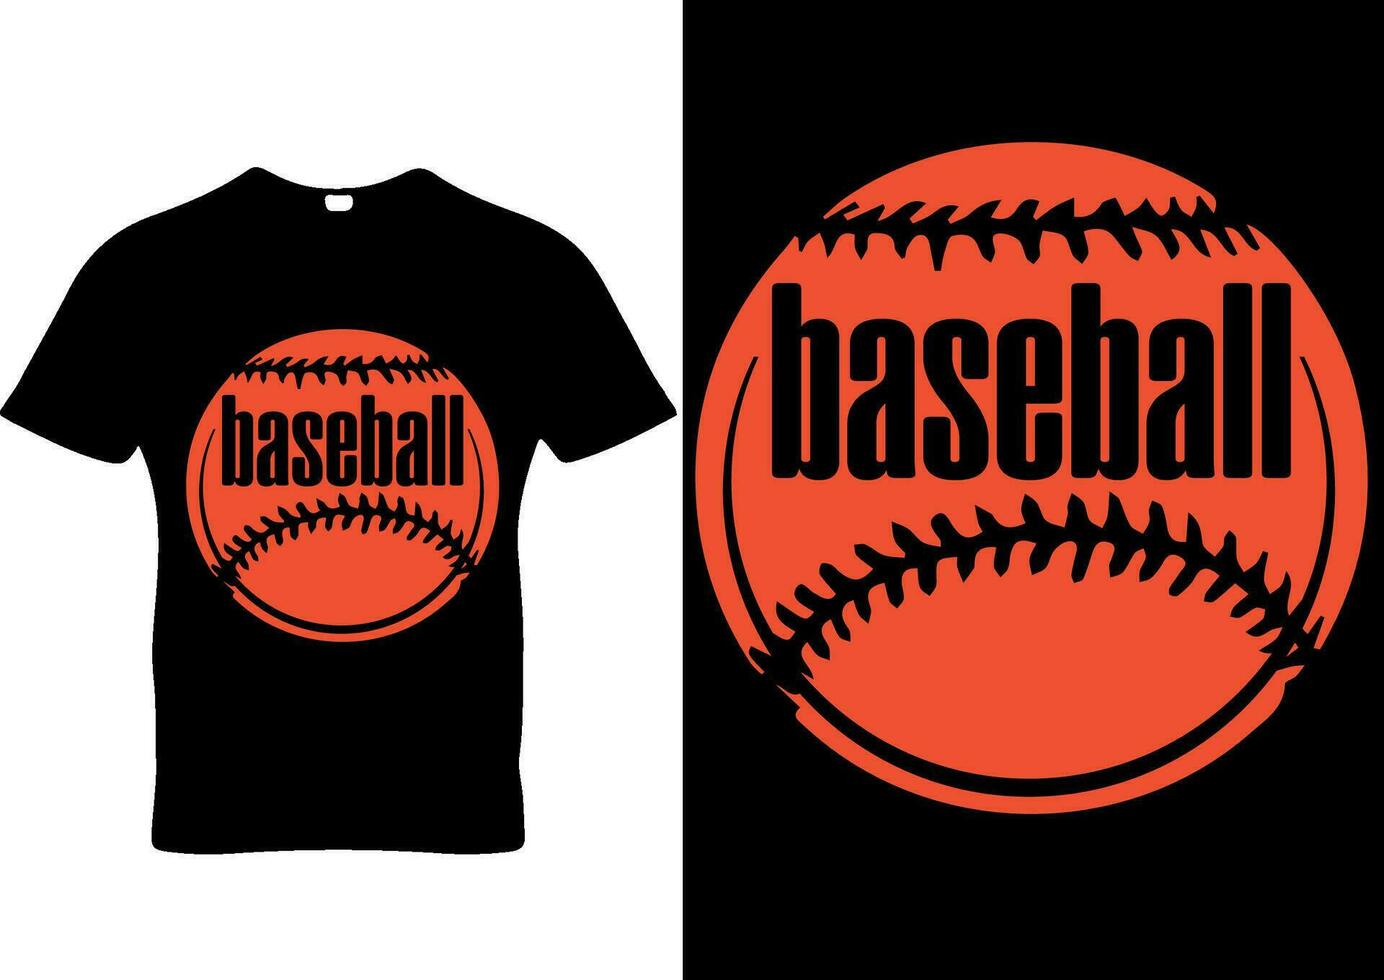 Super Baseball season t-shirt design super mom baseball season vector